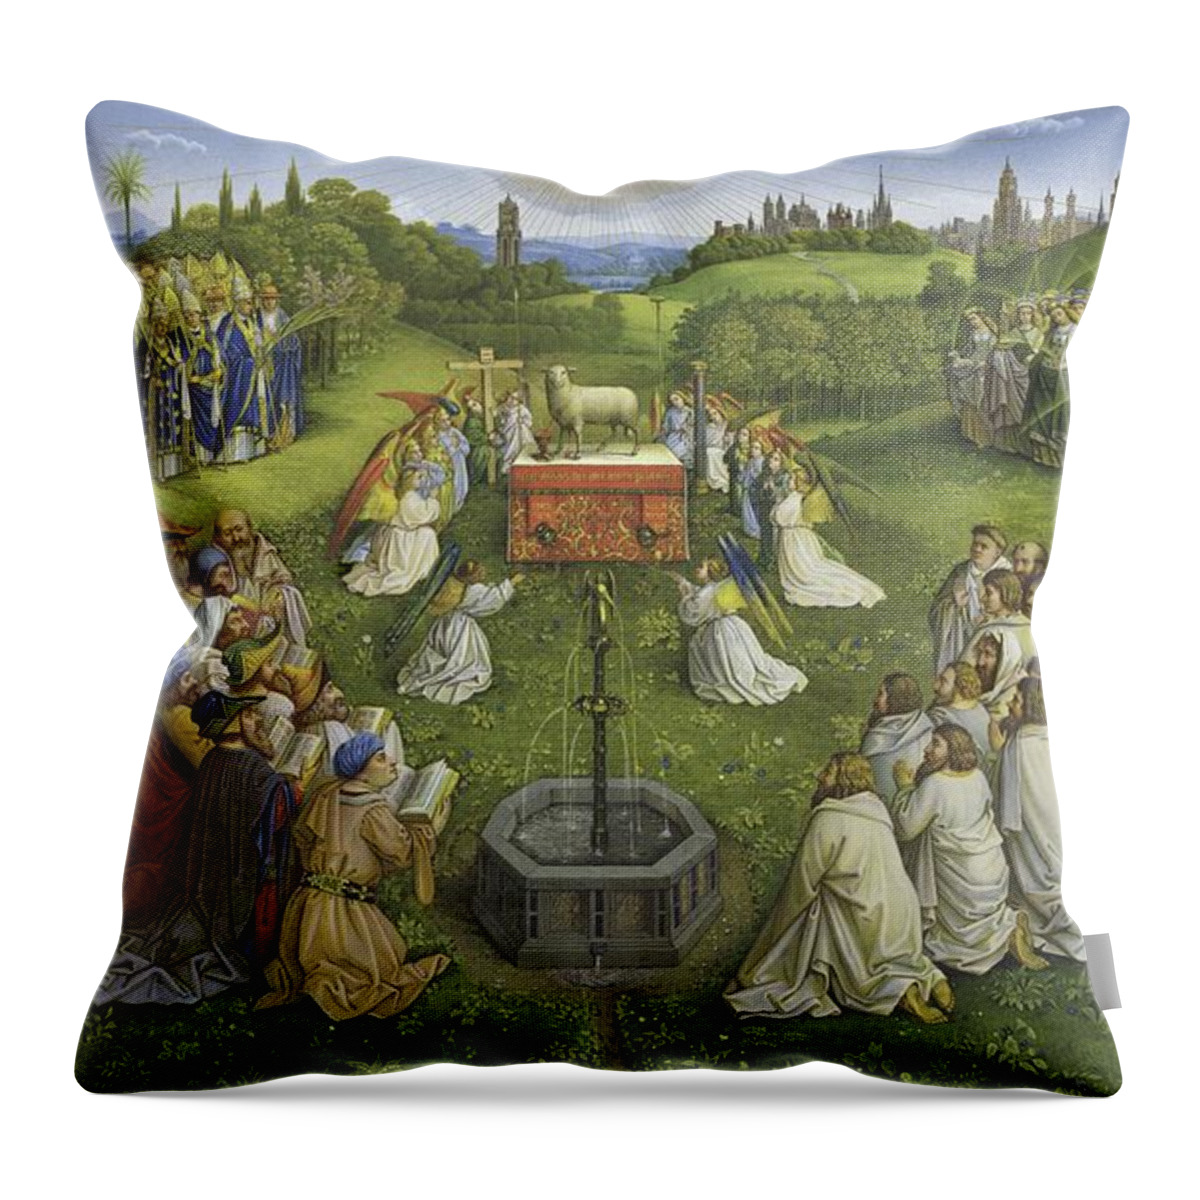 Adoration Of The Mysticlamb Throw Pillow featuring the painting Adoration of the Mystic Lamb by Hubert Eyck and Jan van Eyck